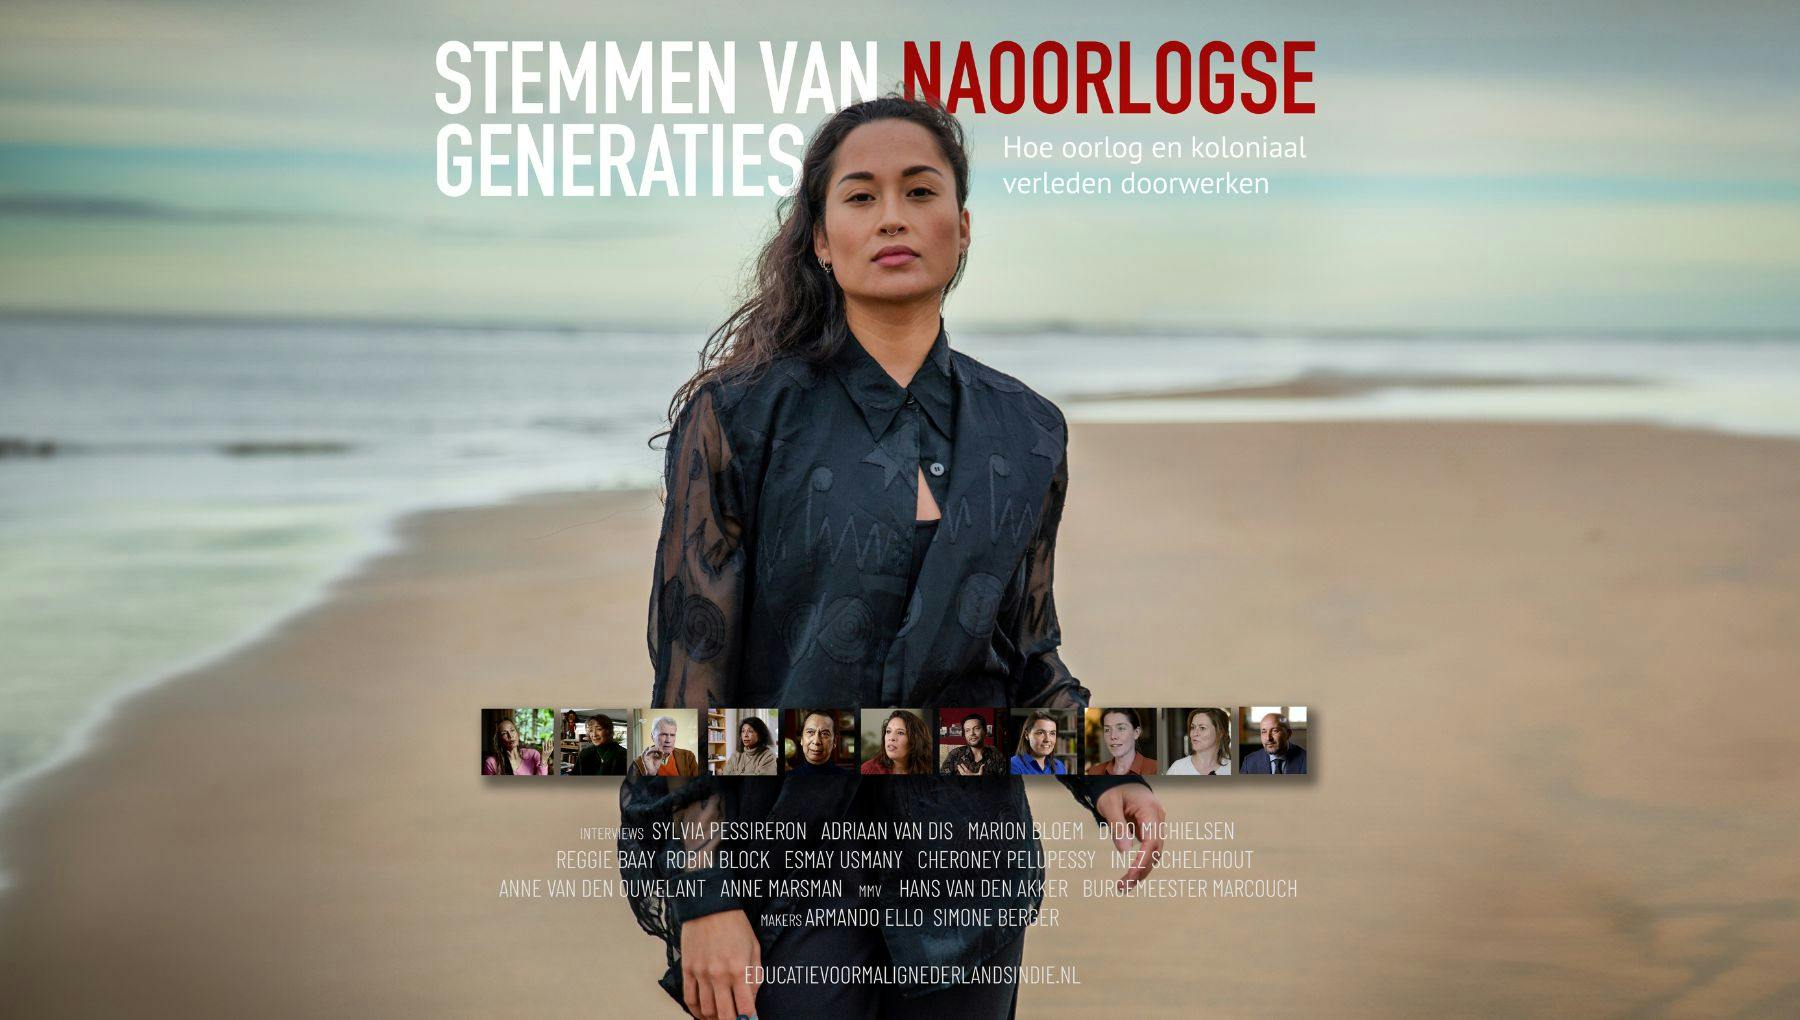 Documentaire & programma: Stemmen van naoorlogse generaties